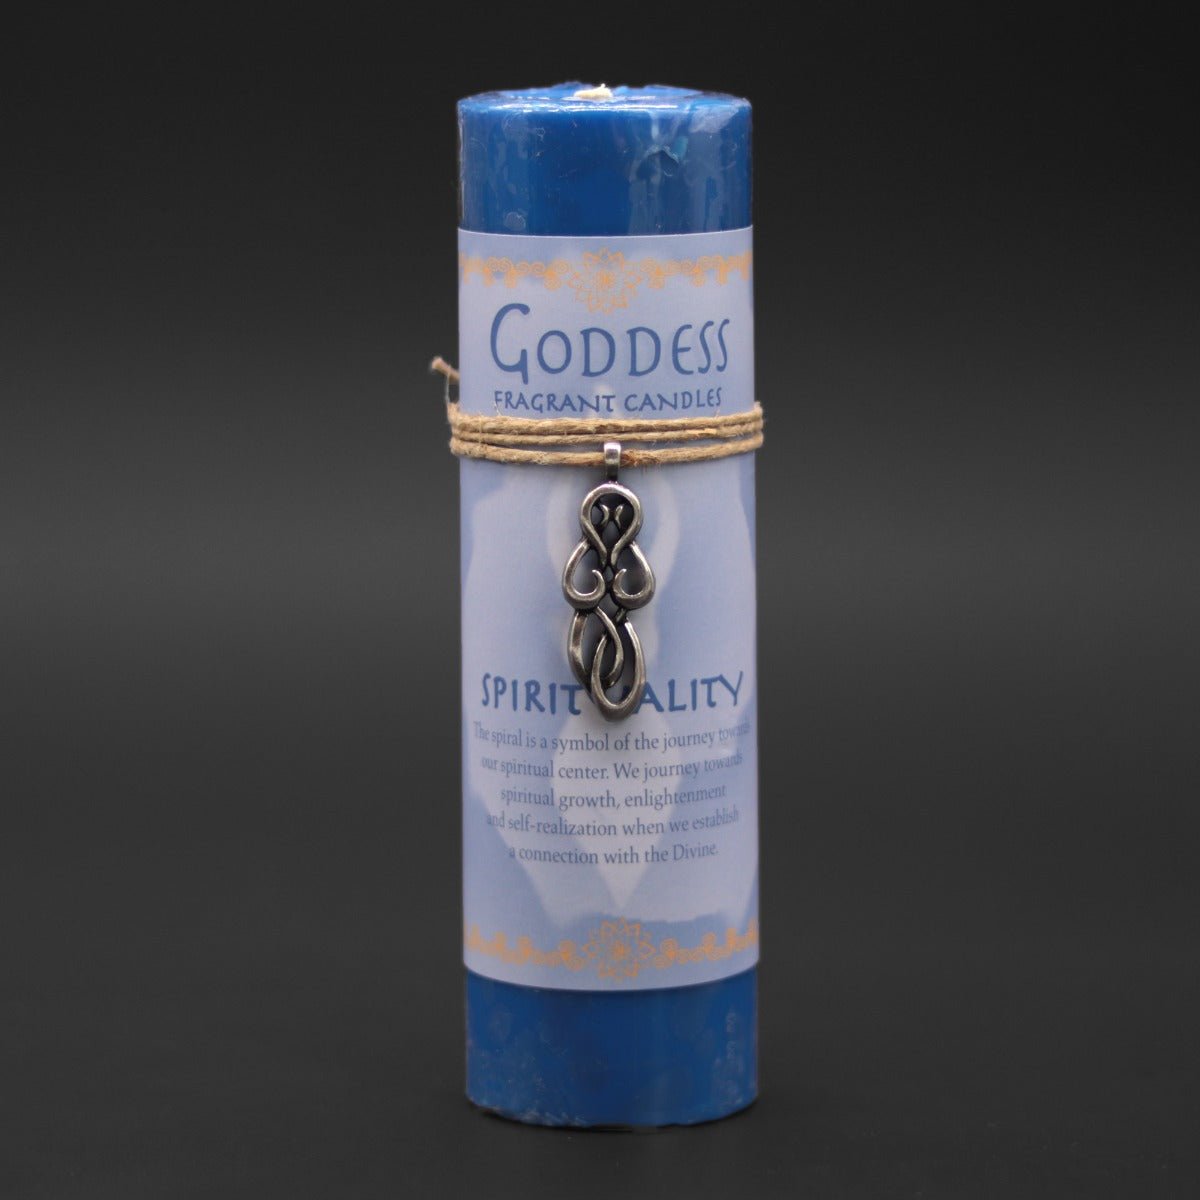 Goddess Spirituality Candle with Pendant - 13 Moons